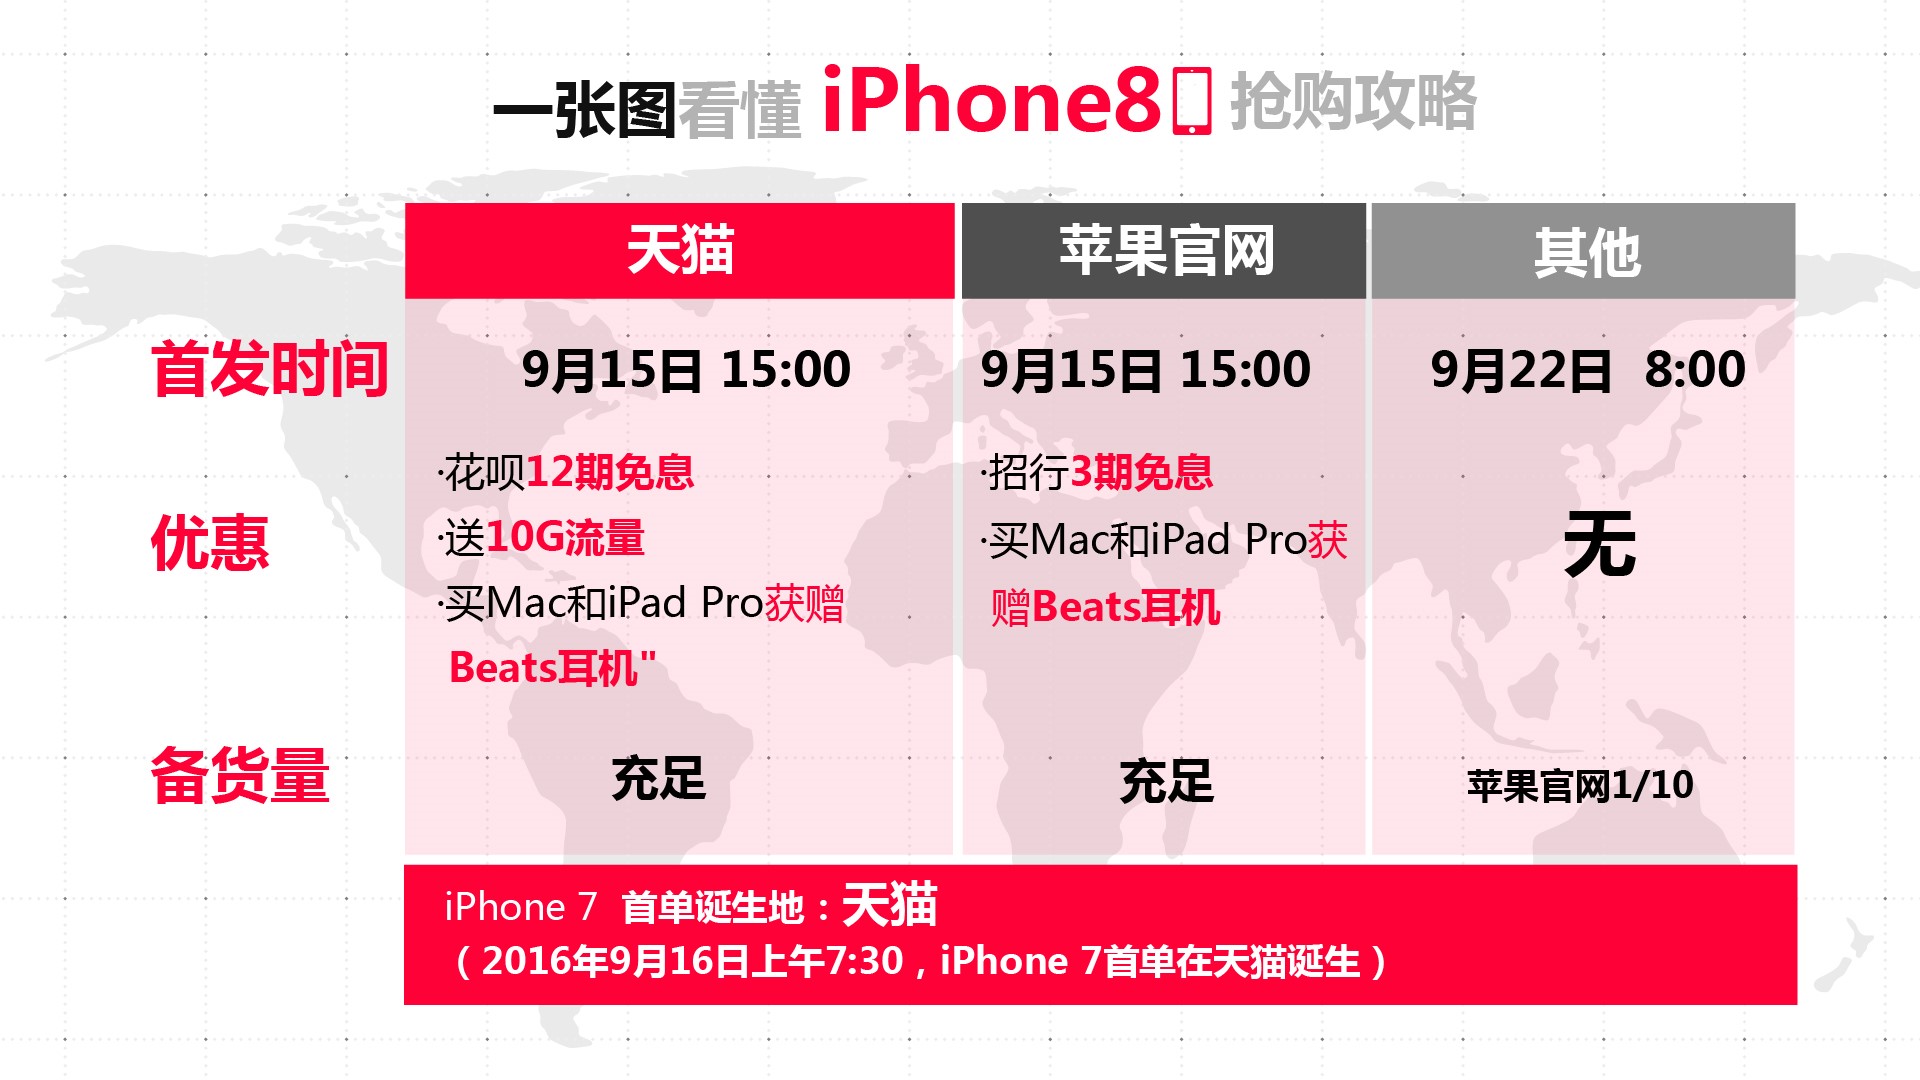 Iphone X发布天猫成国内最快通道 享7天优先预购期